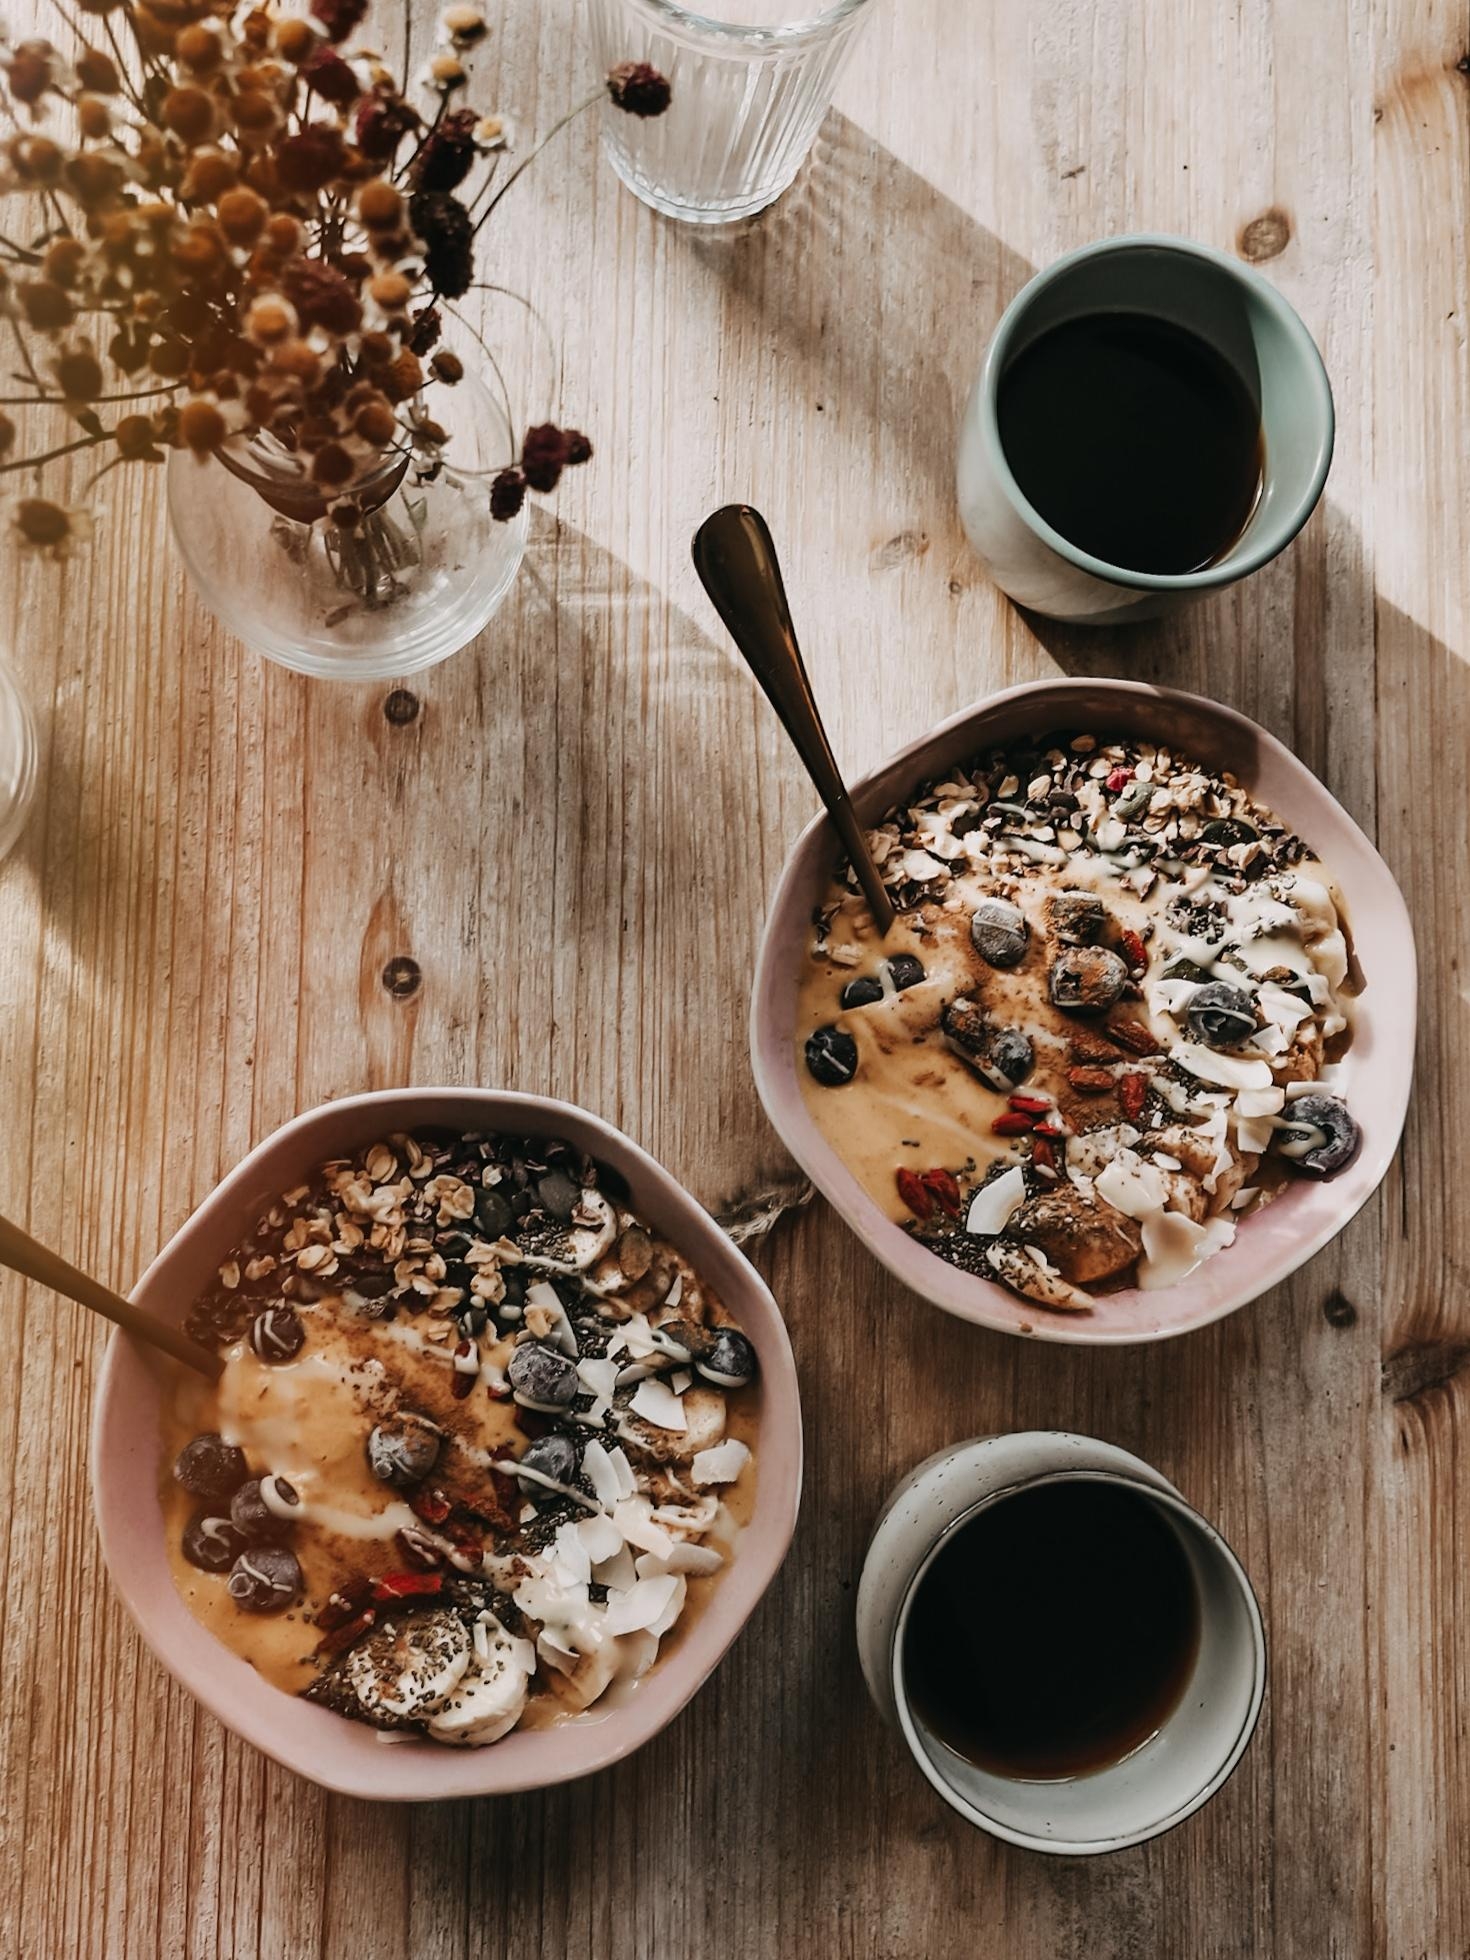 Frühstück ist doch die beste Zeit des Tages. #breakfastgoals 